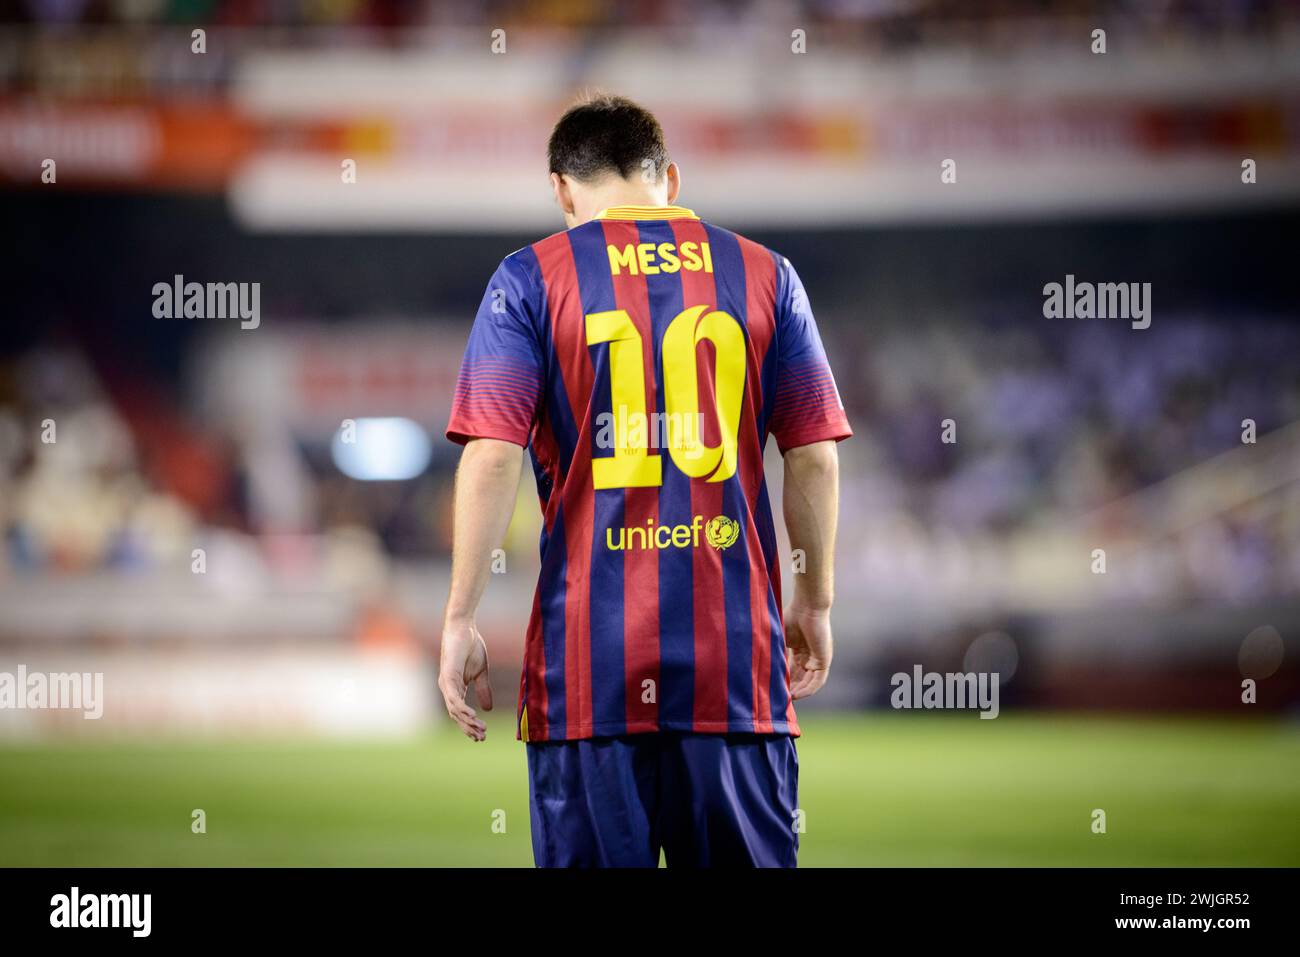 Rückporträt des argentinischen Spielers Lionel Messi während eines Spiels mit dem Trikot Nummer 10 von Barcelona im Mestalla-Stadion in Valencia, Spanien. Stockfoto